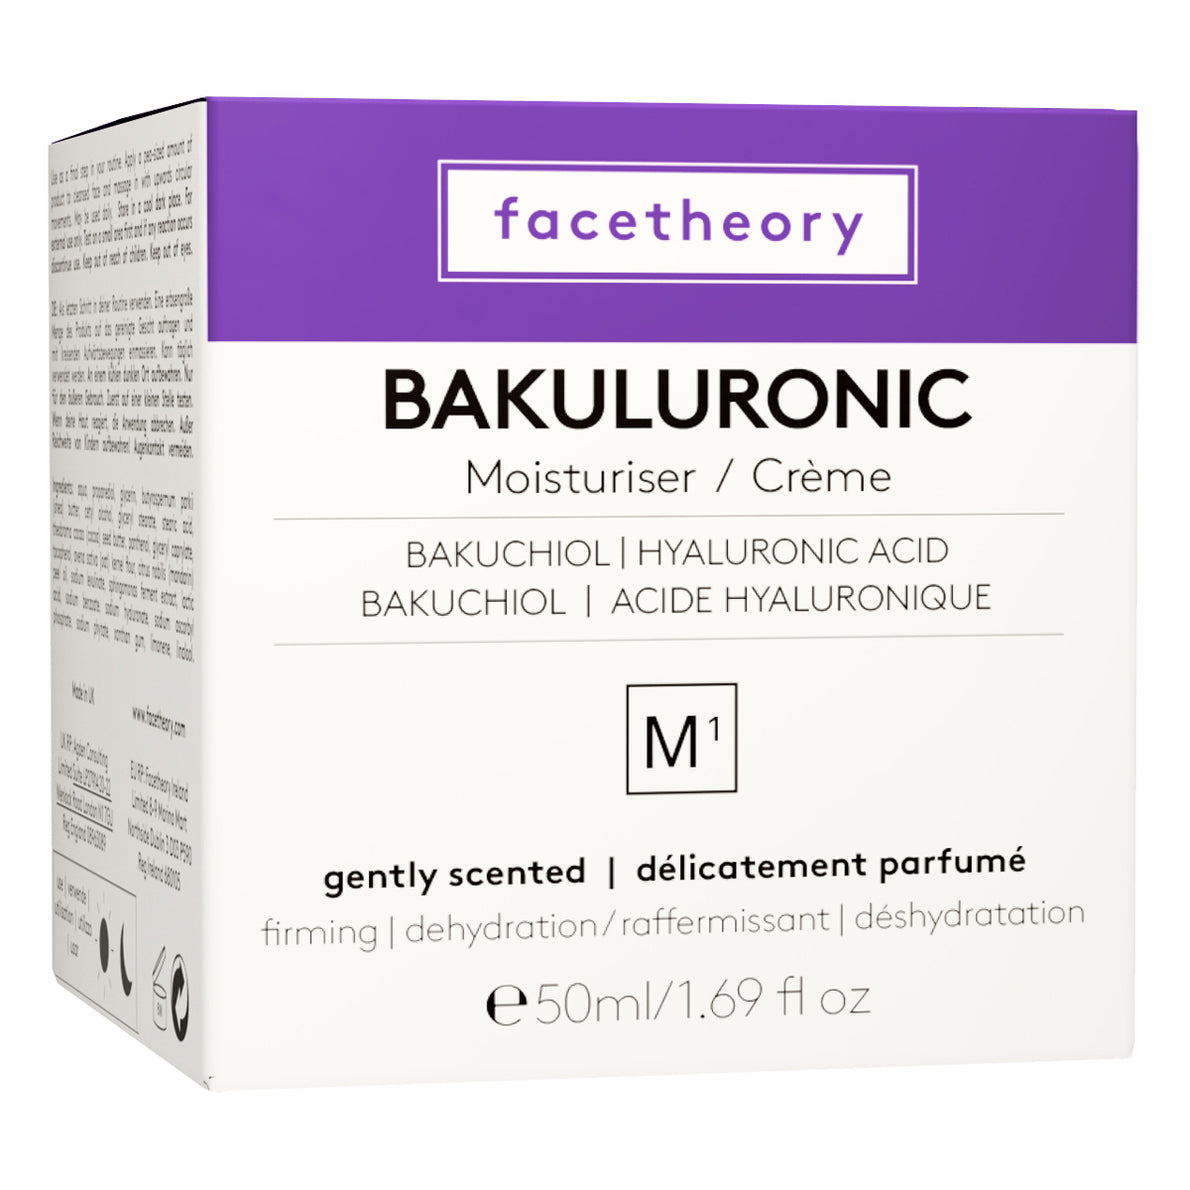 Bakuluronic Feuchtigkeitscreme M1 mit Bakuchiol, Hyaluronsäure & Vitamin C